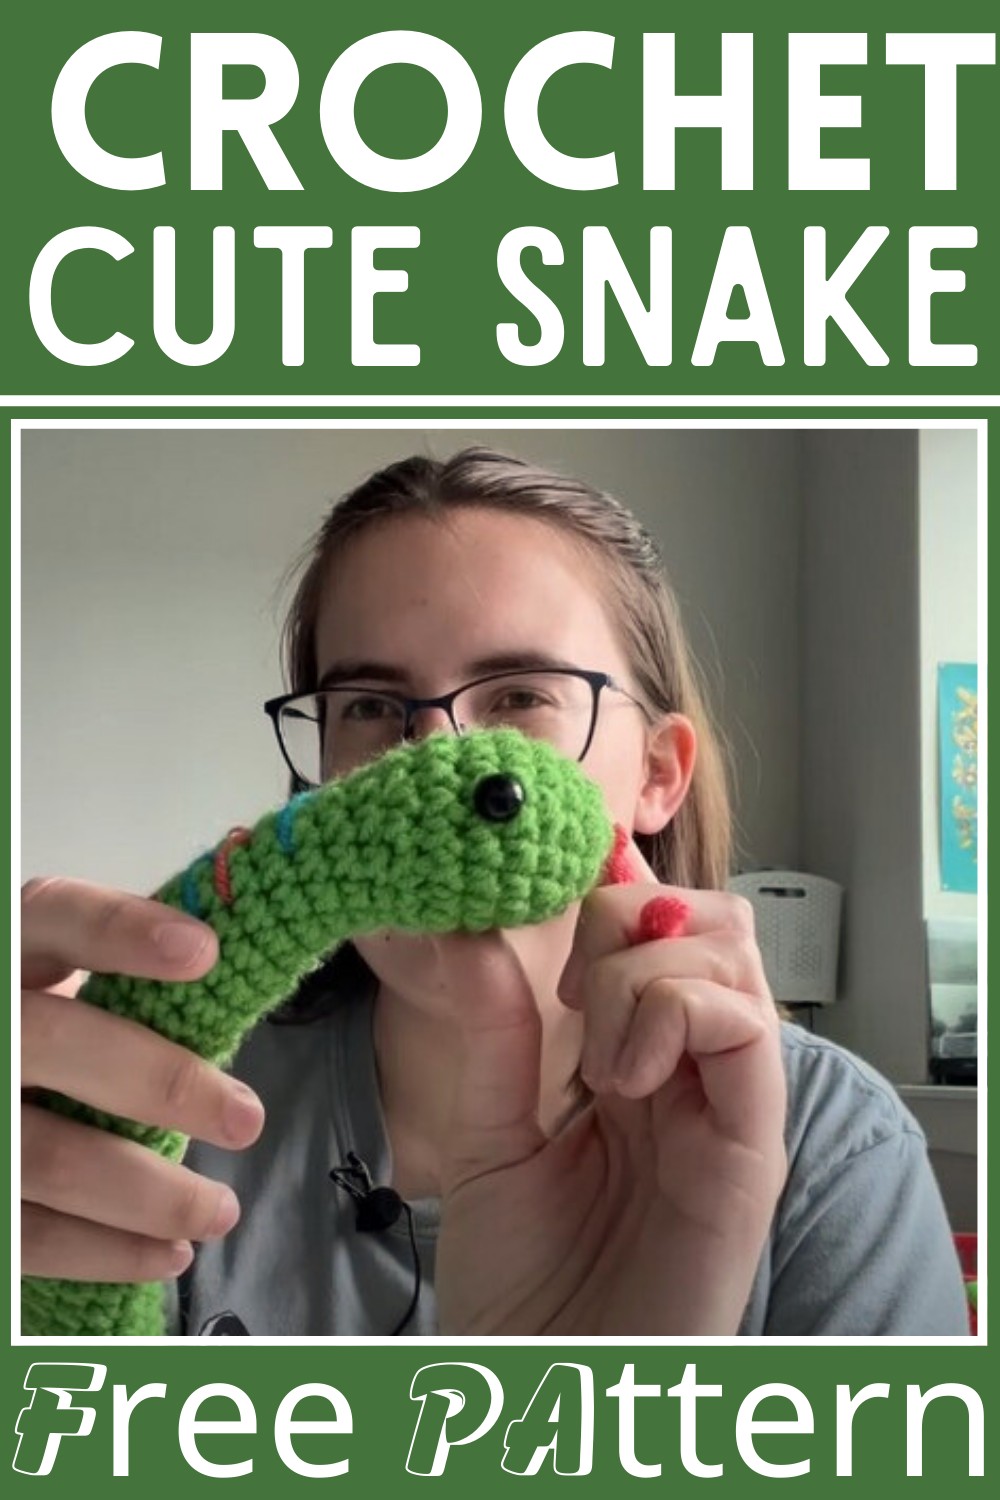 Crochet Snake Free Pattern